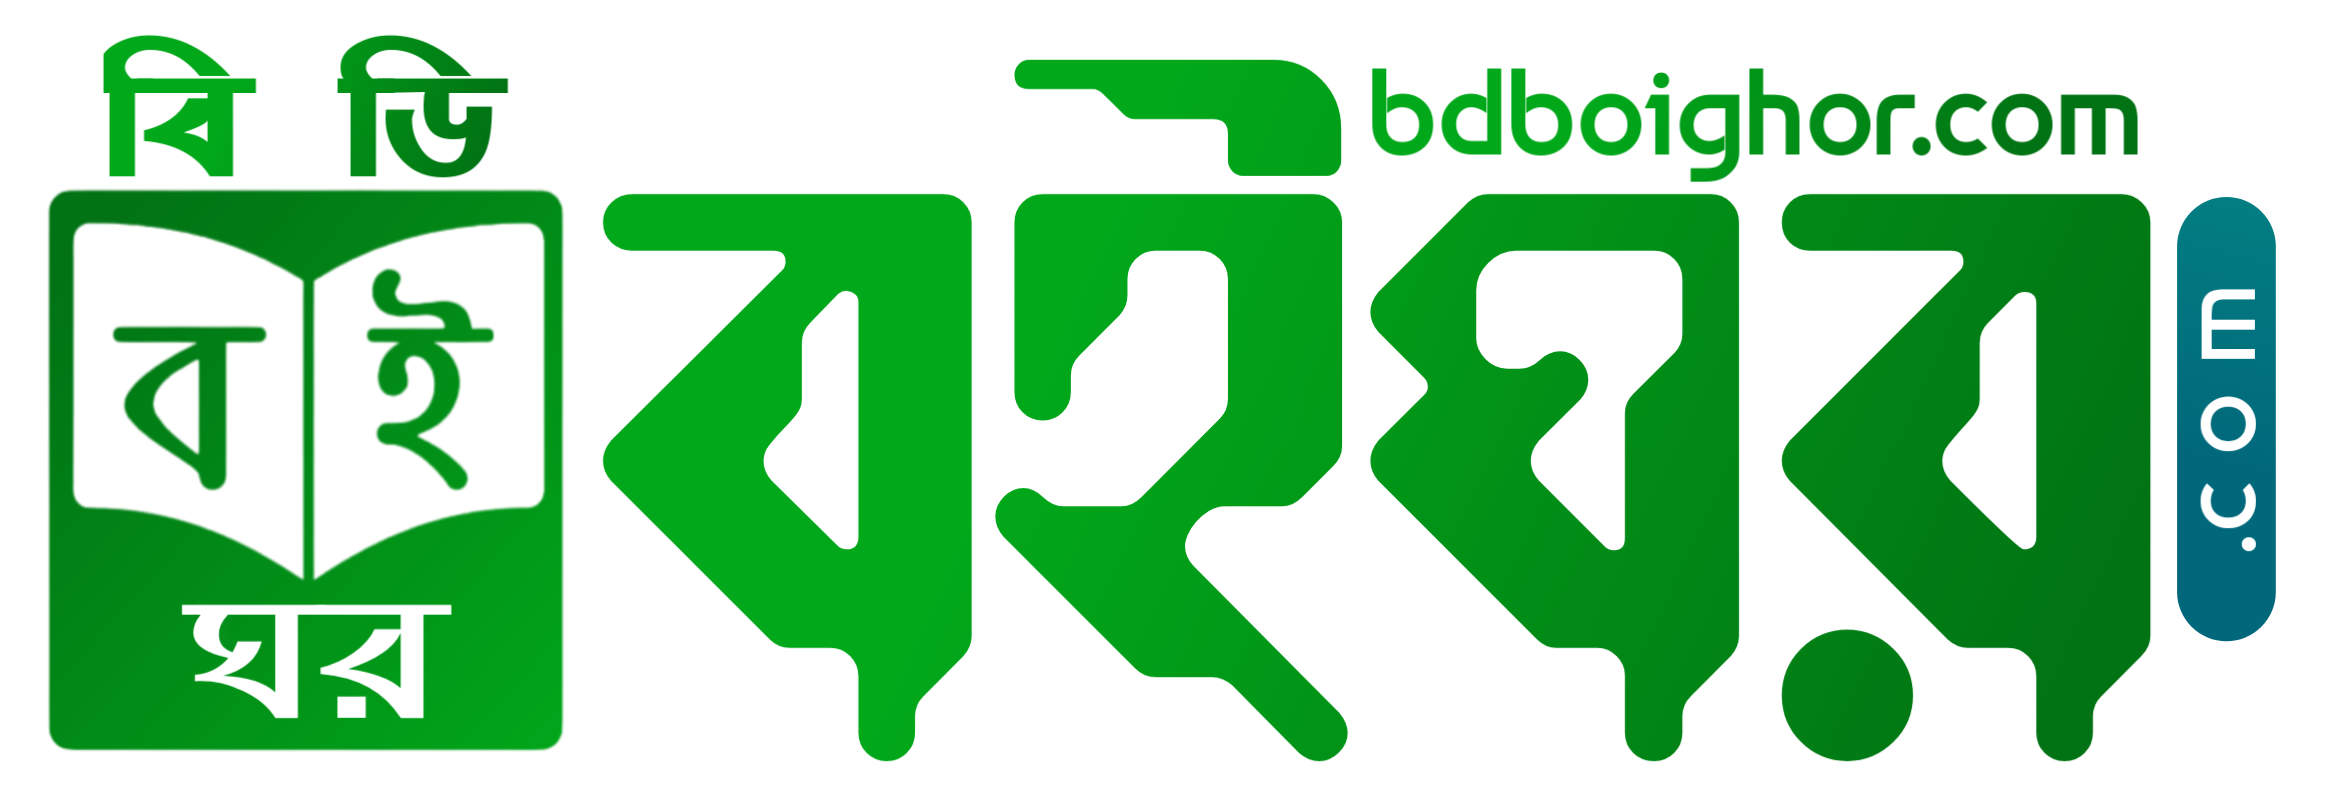 bdboighor.com logo